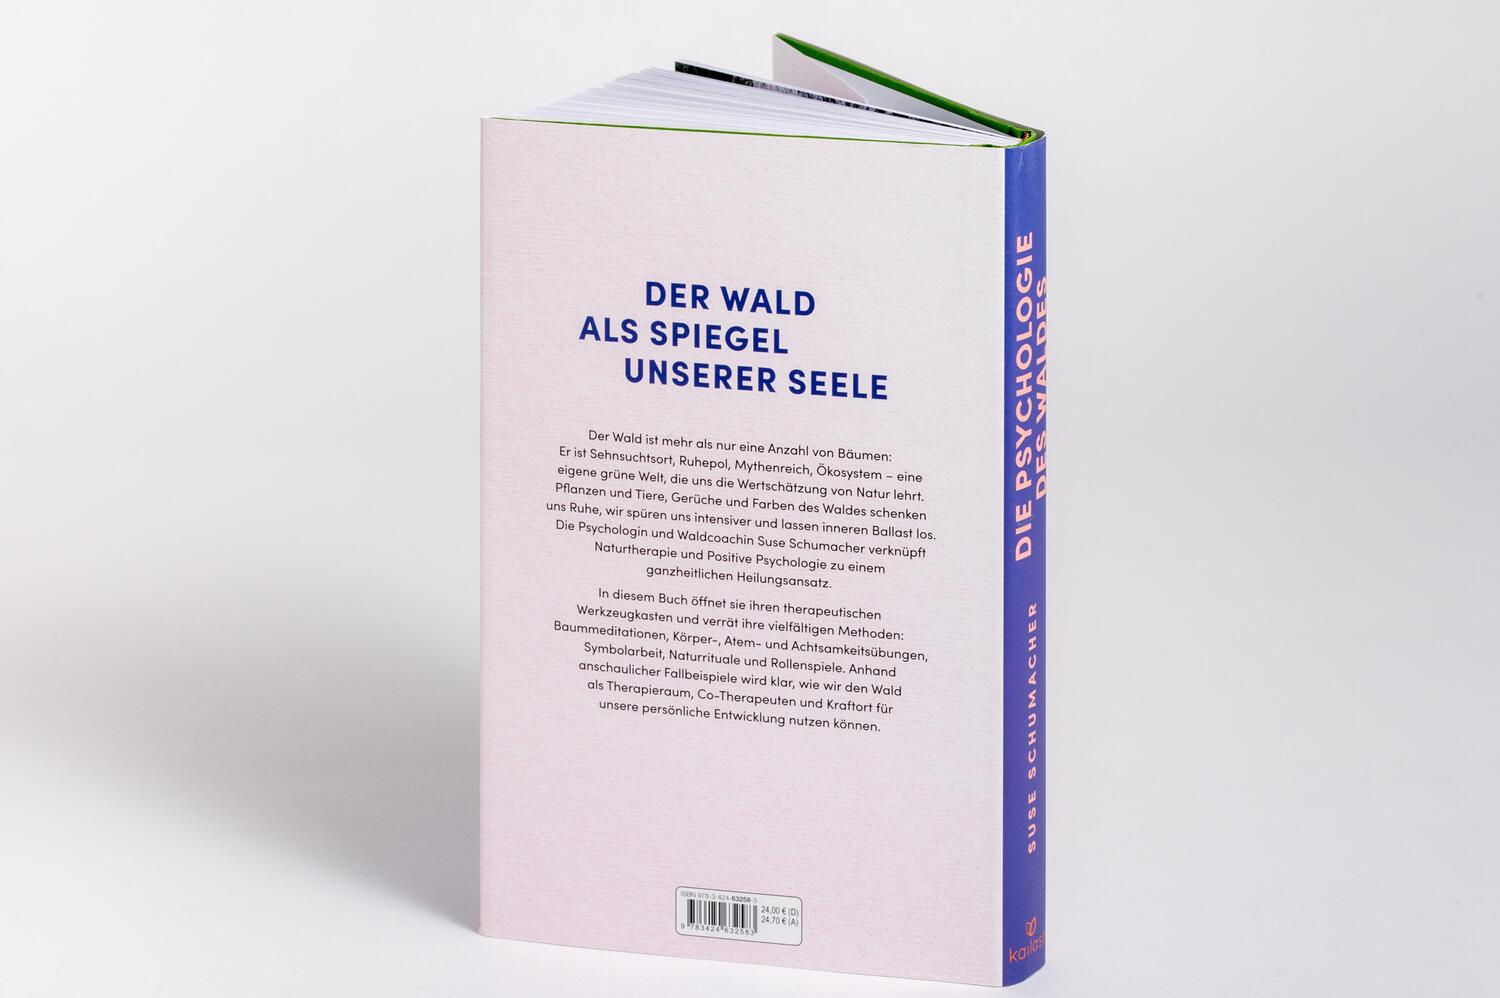 Bild: 9783424632583 | Die Psychologie des Waldes | Suse Schumacher | Buch | 256 S. | Deutsch